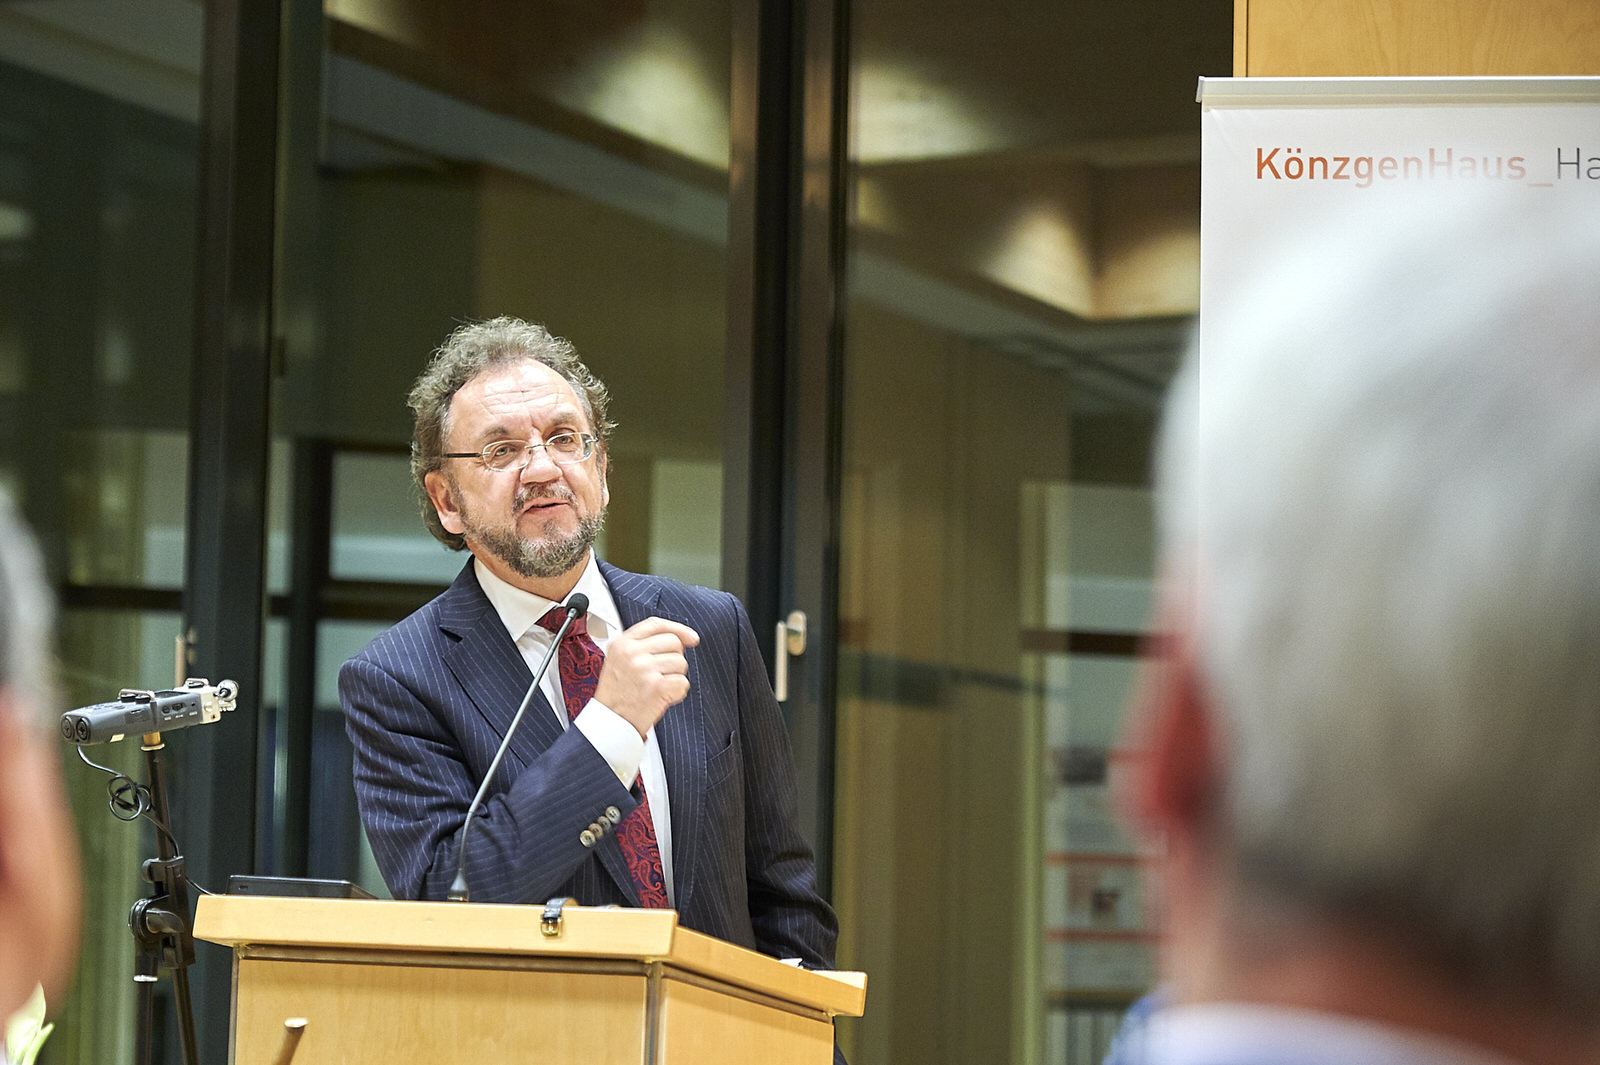 Prof. Heribert Prantl Festrede im KönzgenHaus